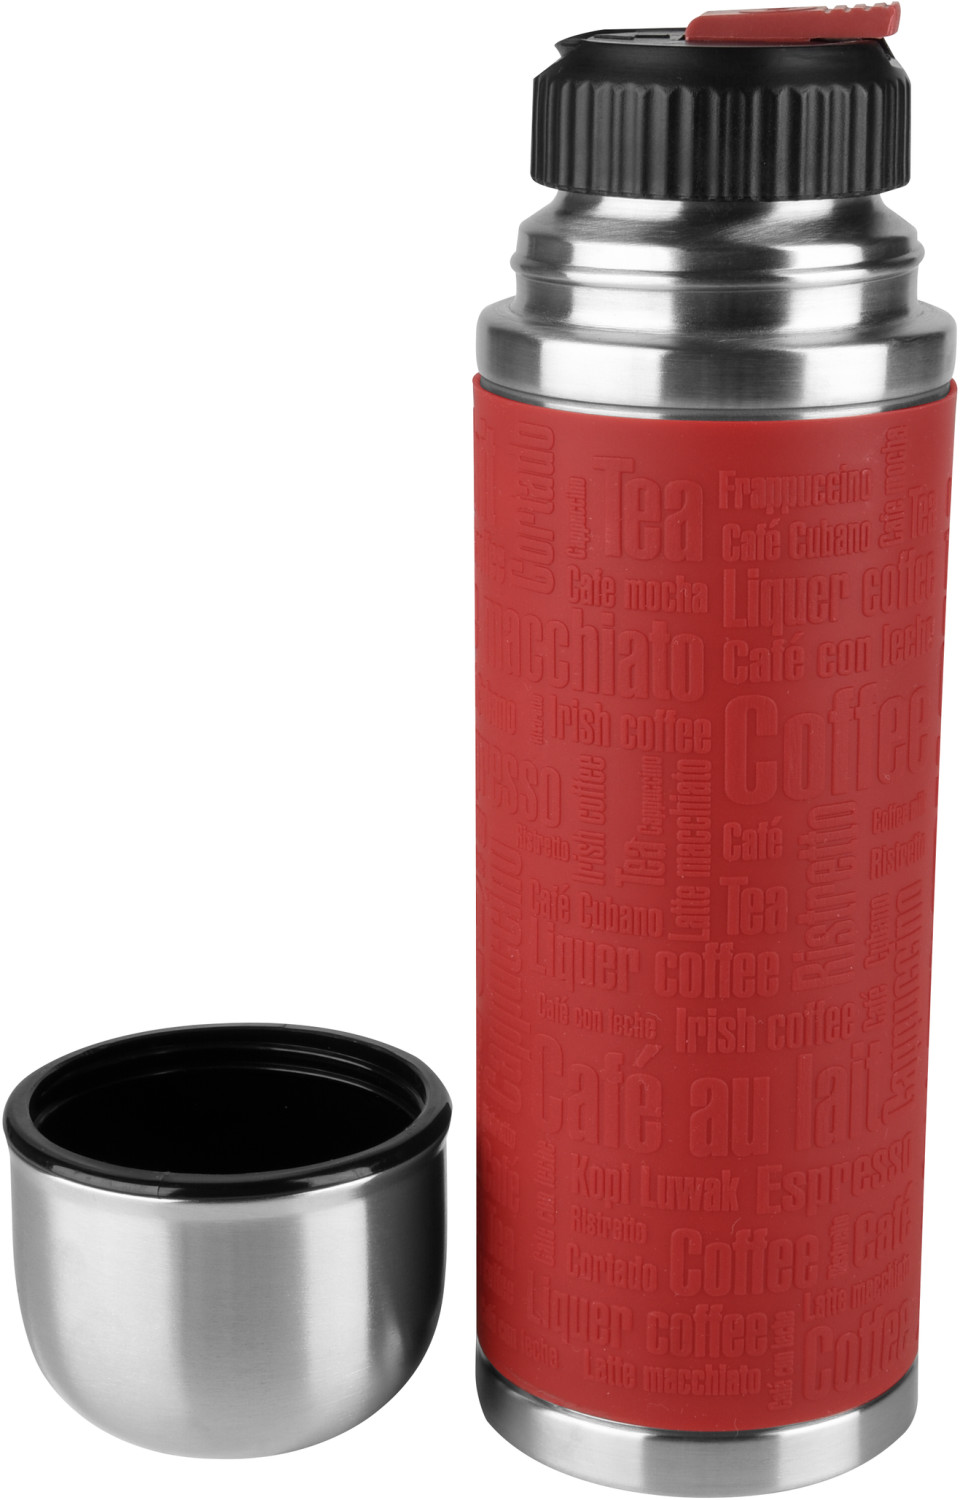 Emsa Senator Isoflasche 0,5 L - Farbe: Rot;